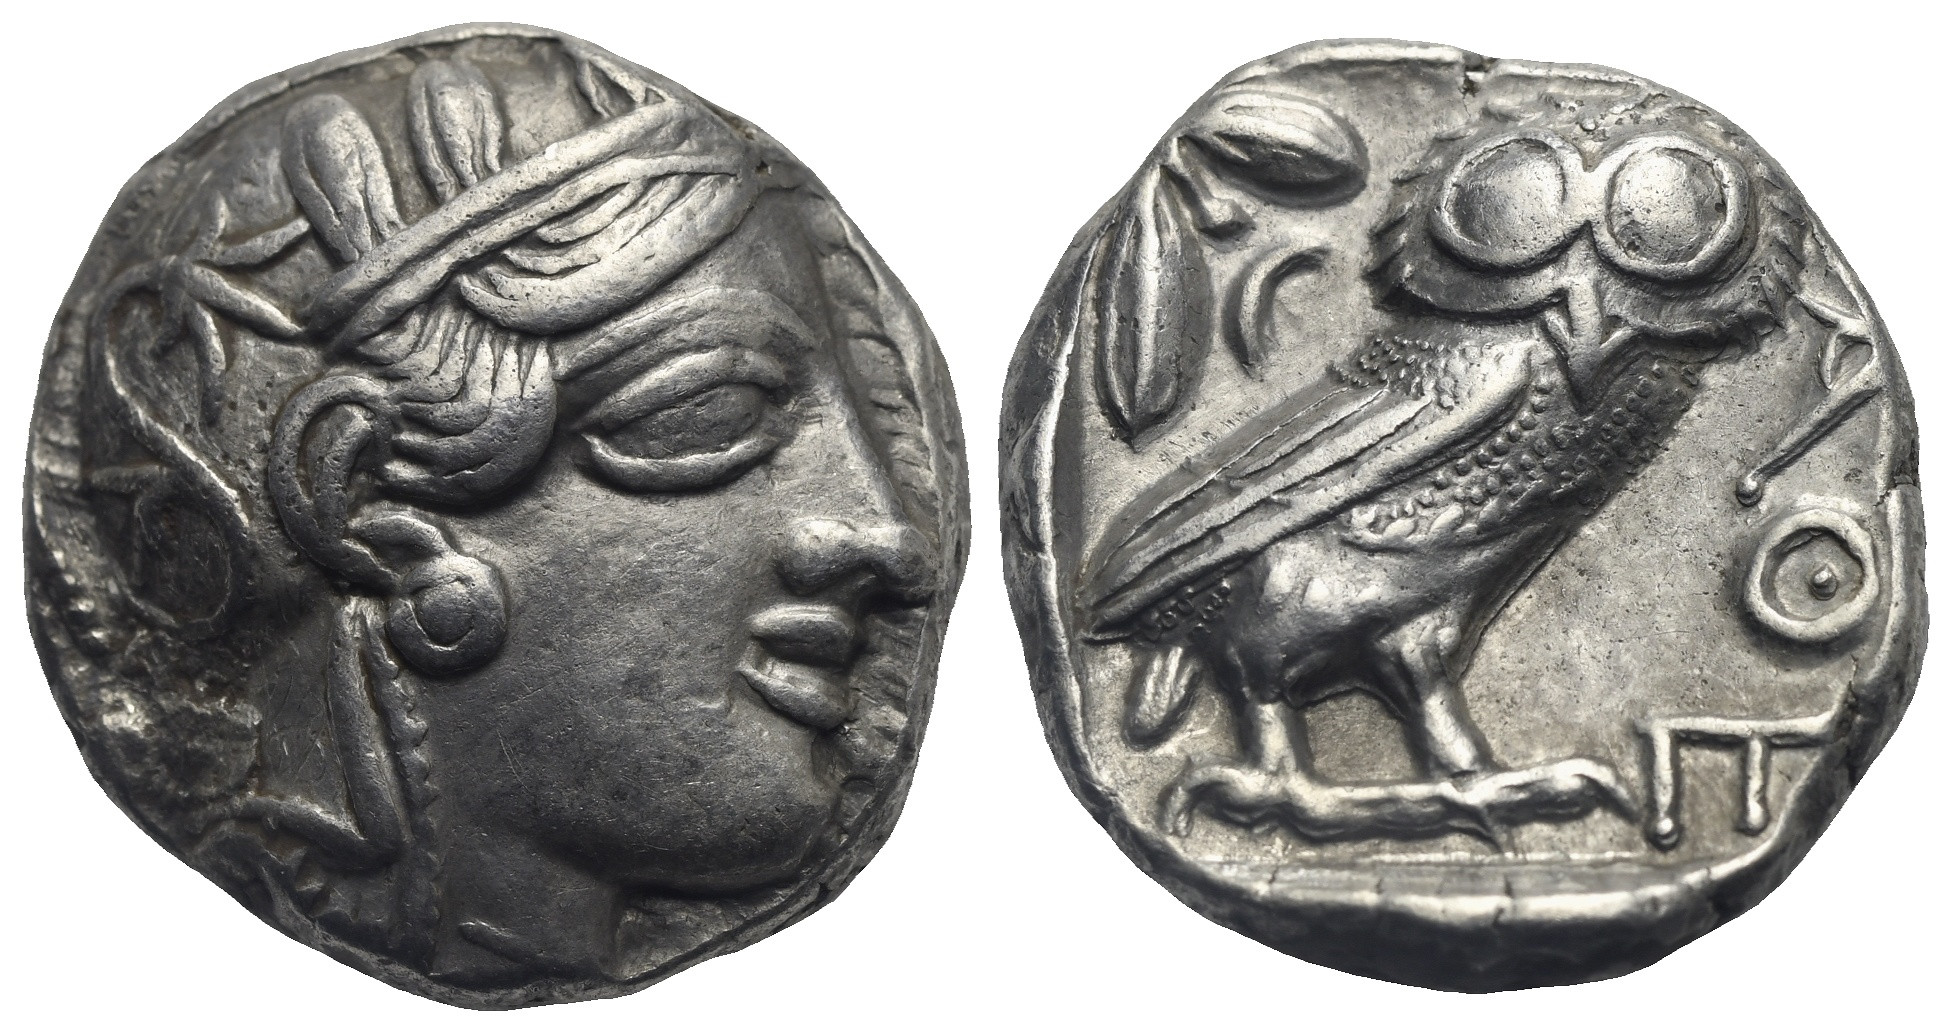 asta young collectors 3 monete coins roma rome grecia greece numismatica numismatics collezione collection